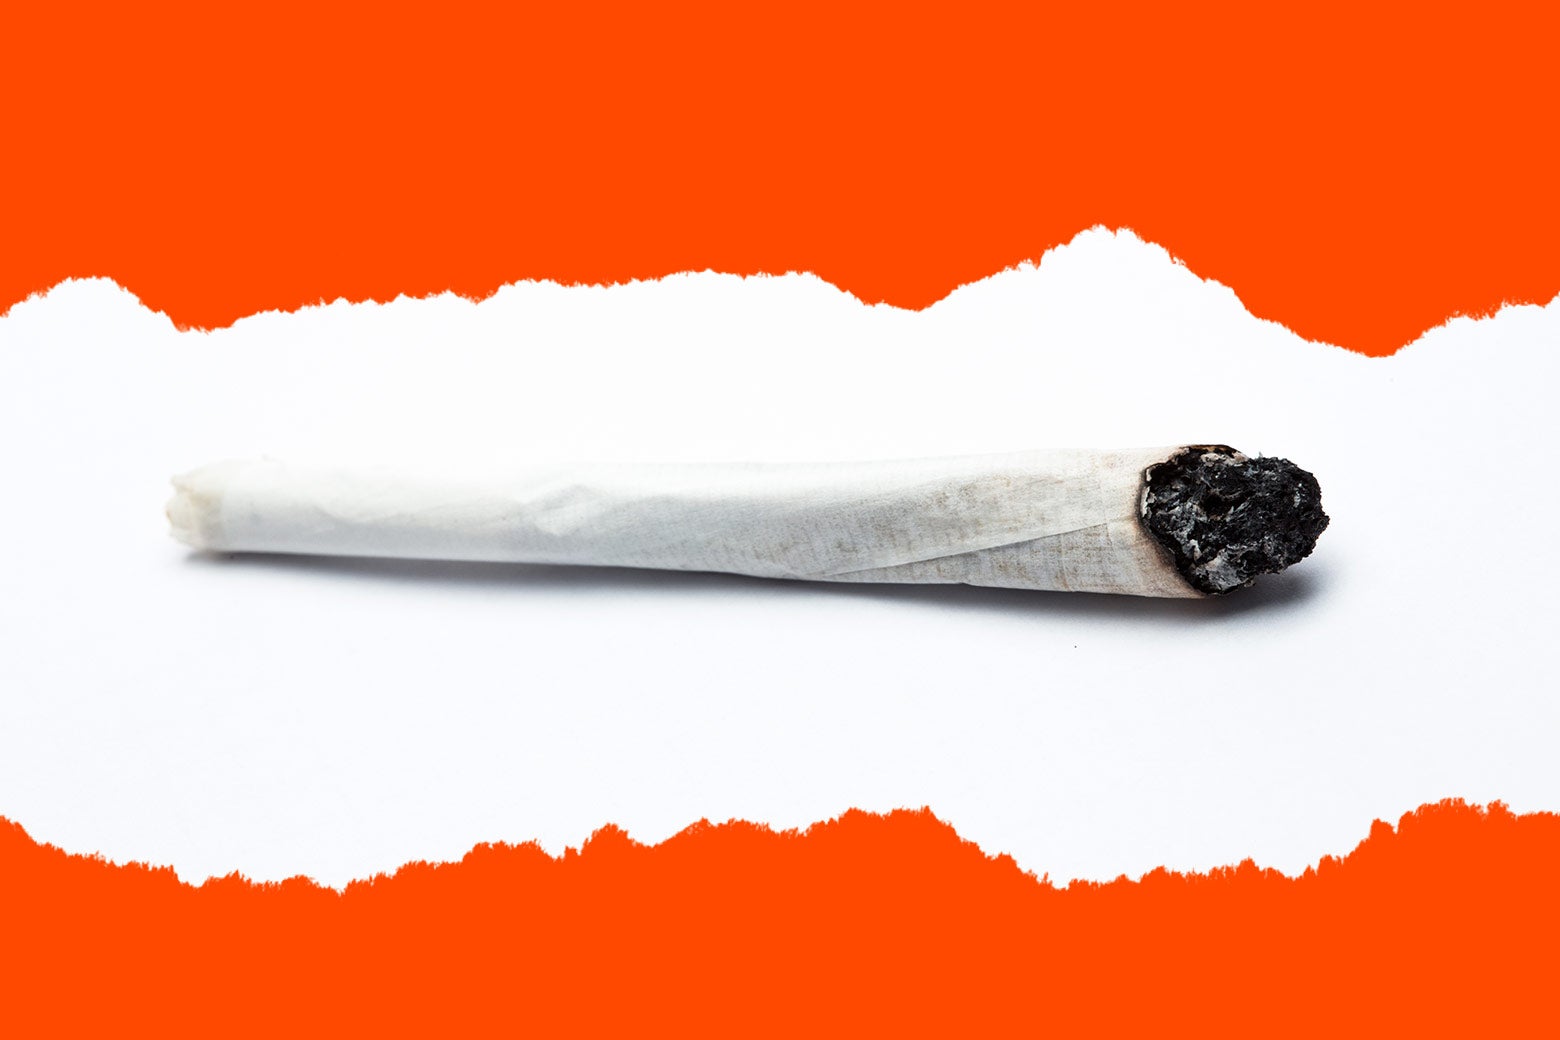 A joint of marijuana.